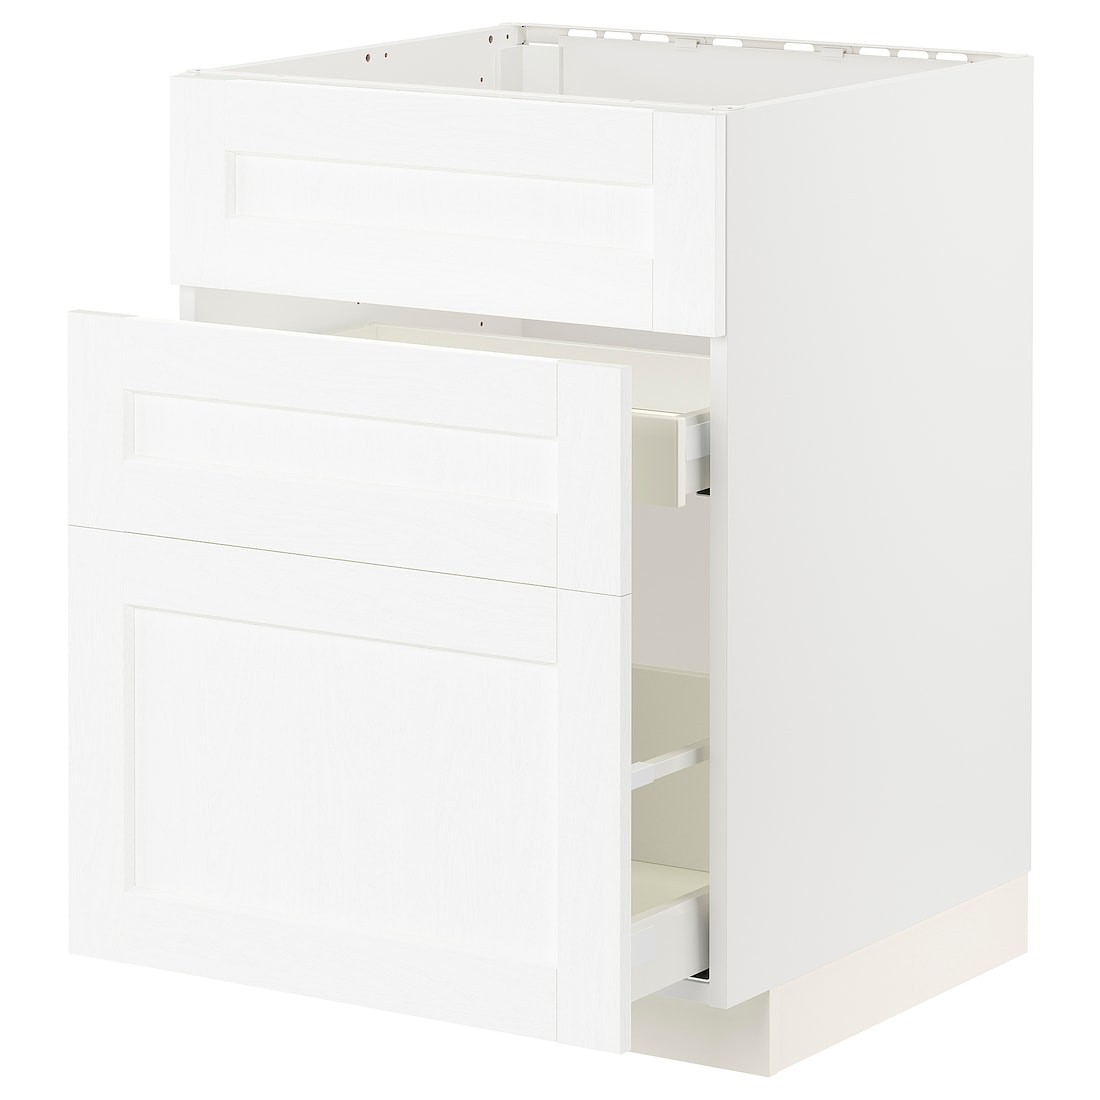 METOD МЕТОД / MAXIMERA МАКСИМЕРА Напольный шкаф под мойку с ящиками, белый Enköping / белый имитация дерева, 60x60 см